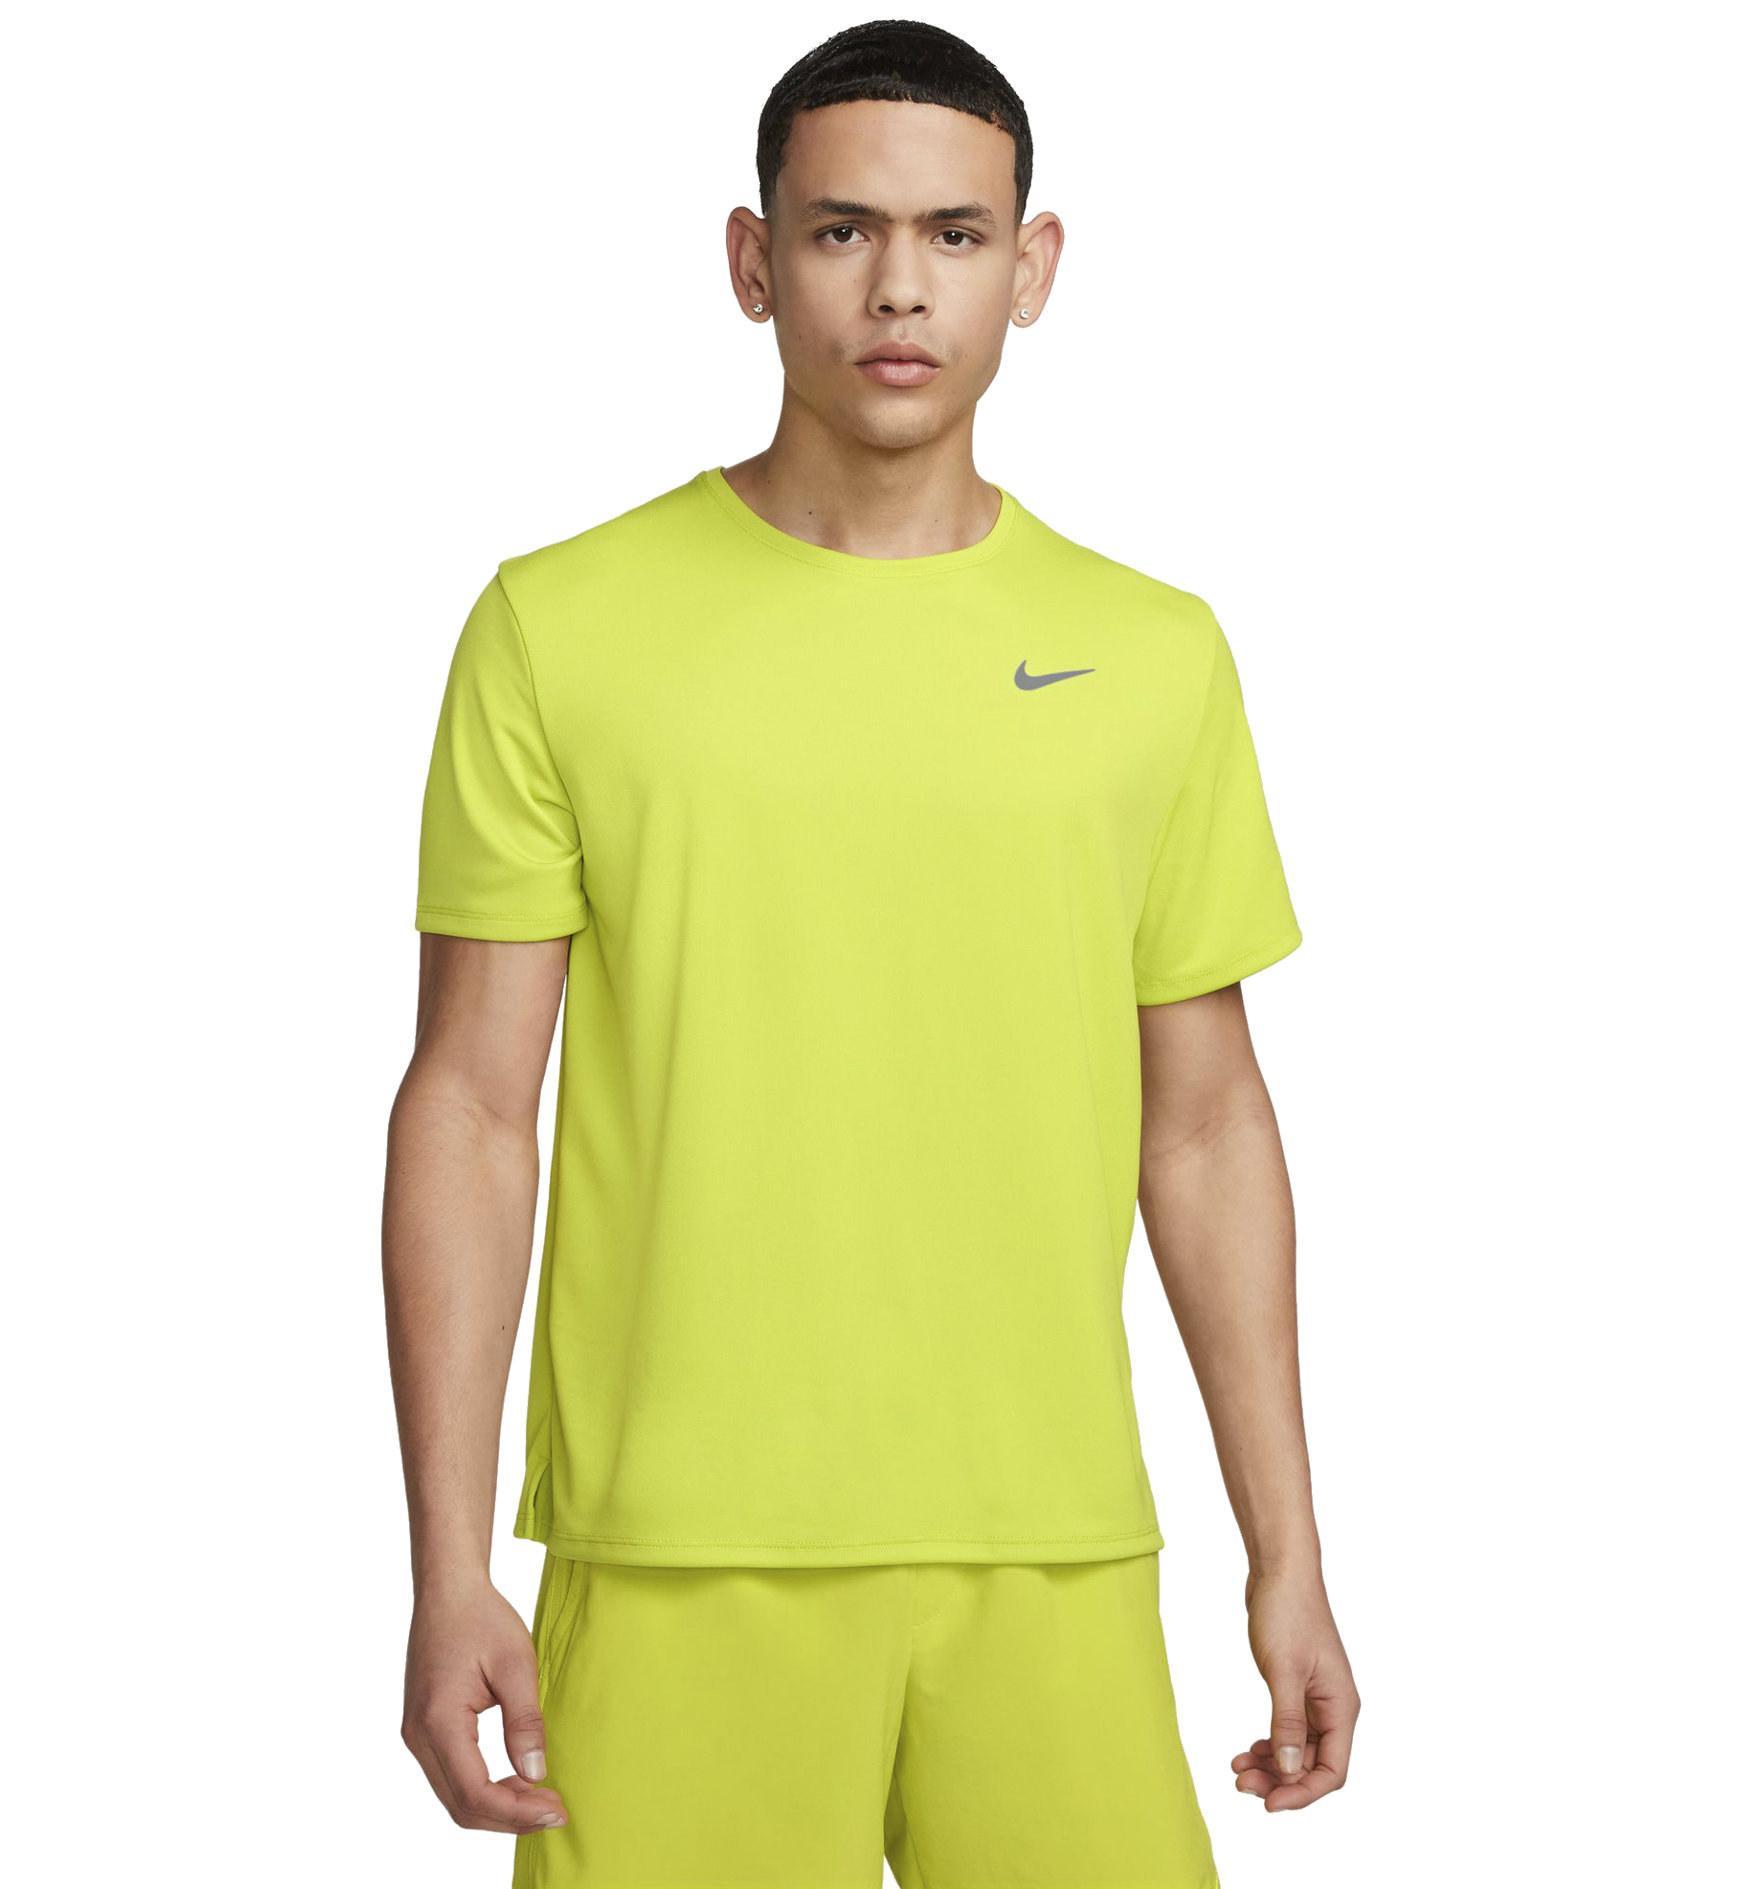 Nike Dri-FIT UV Miler Runningshirt Herren